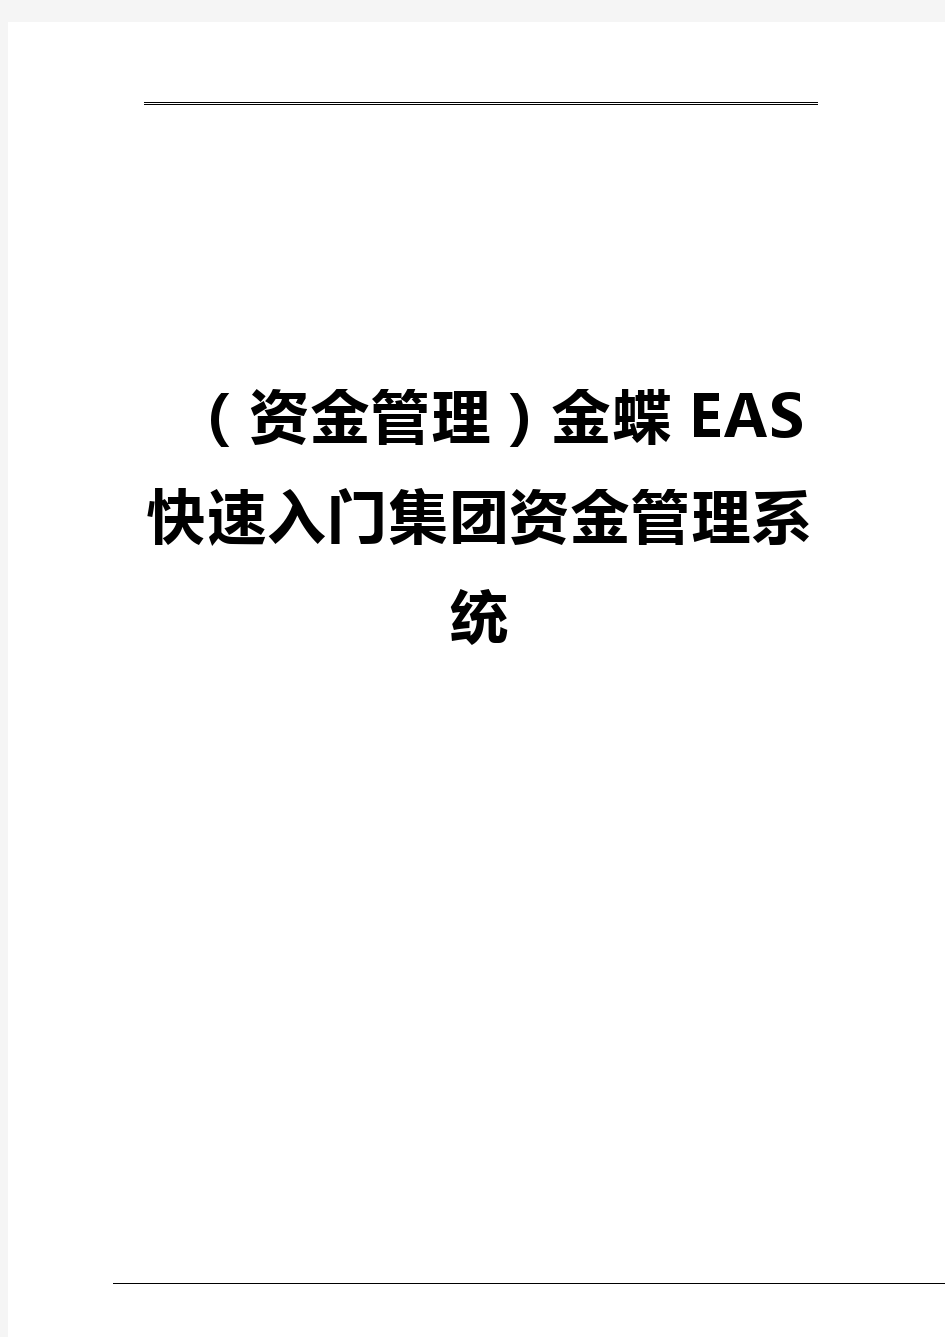 【资金管理】金蝶EAS快速入门集团资金管理系统